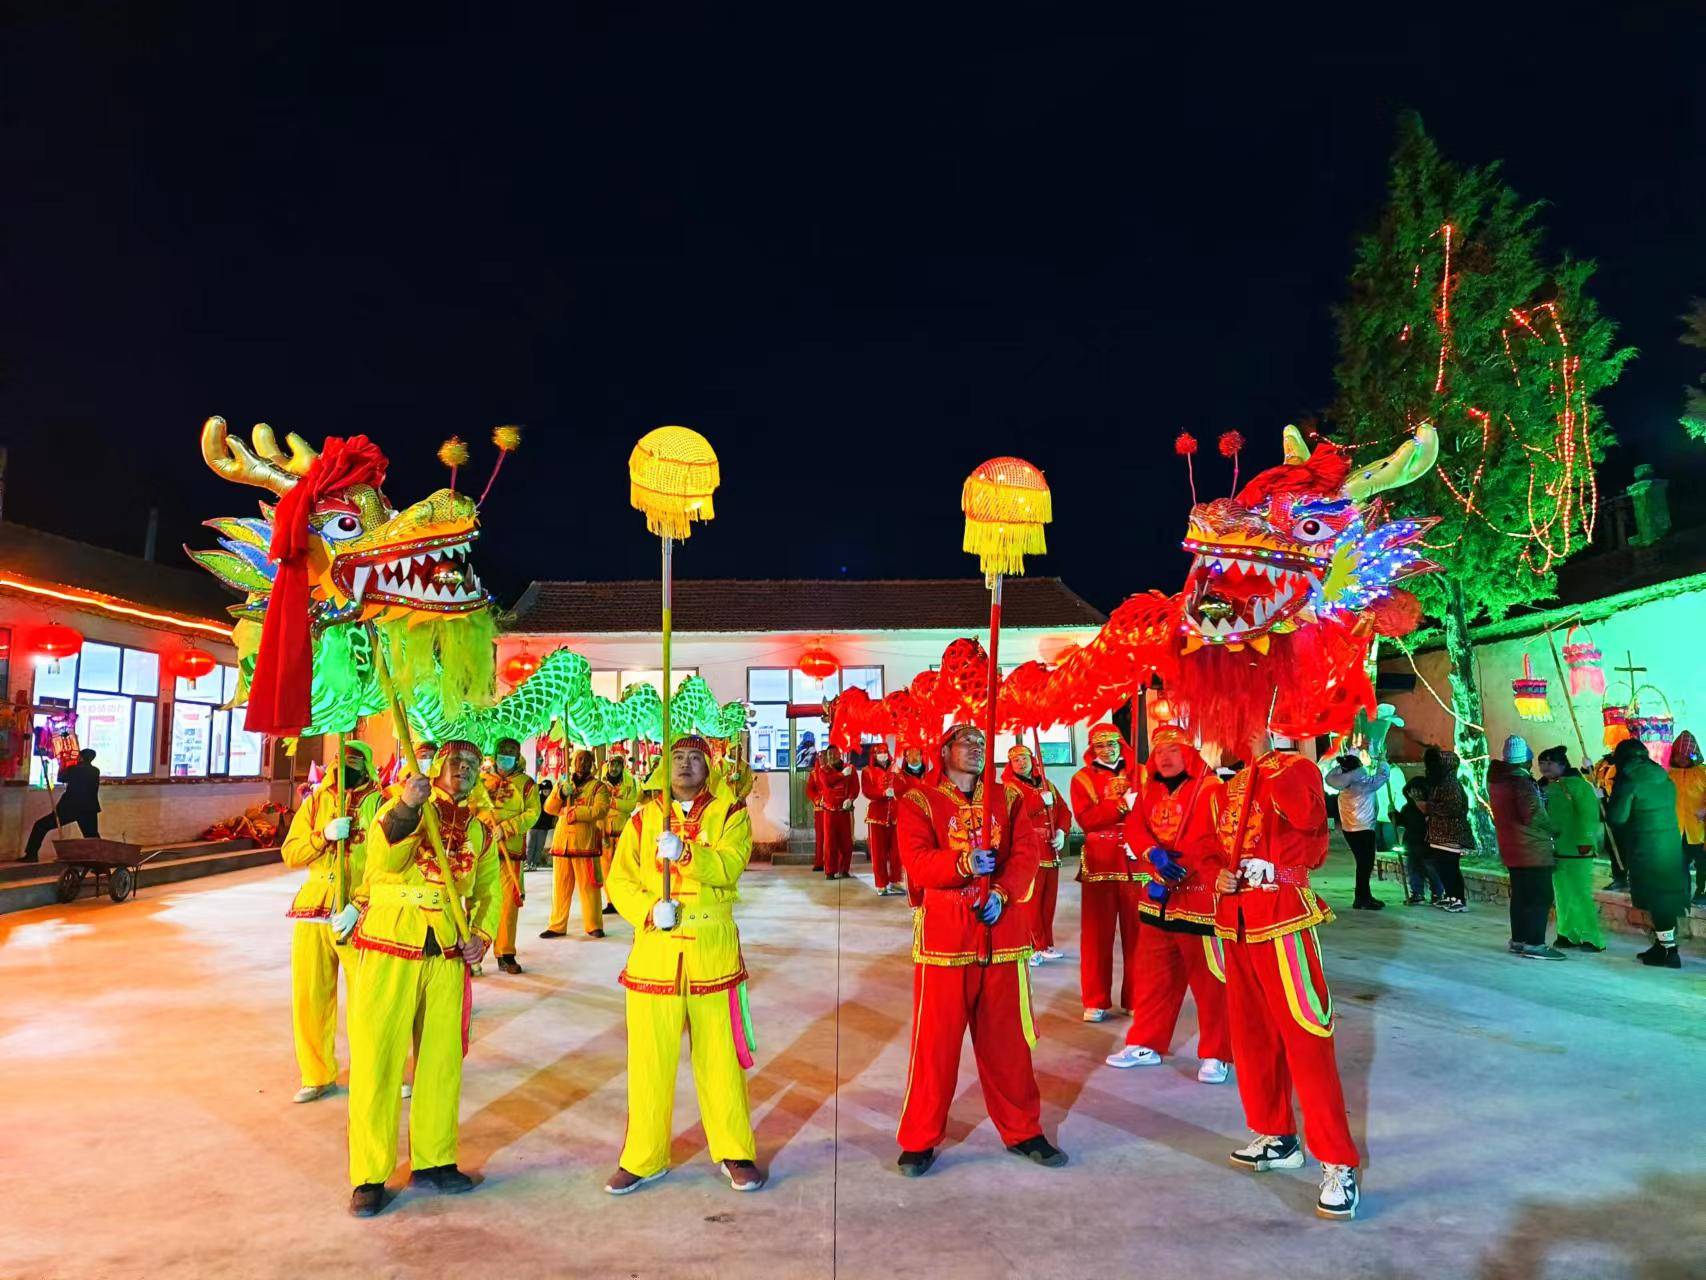 灵丘县下关乡岸底村每年正月初十都会舞龙舞狮扭秧歌闹红火,当地把